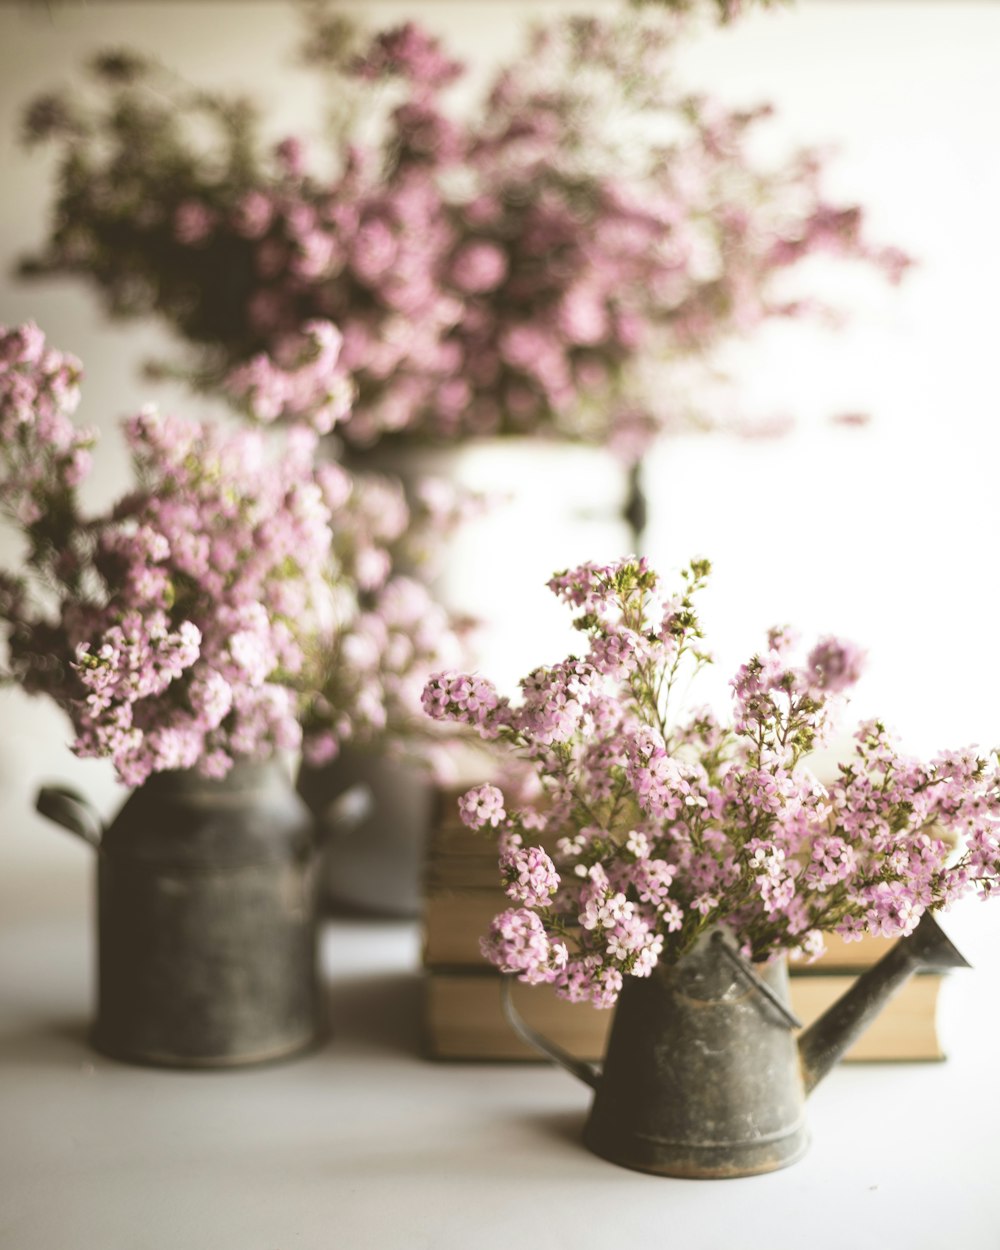 fiori rosa e bianchi in vaso di ceramica grigia